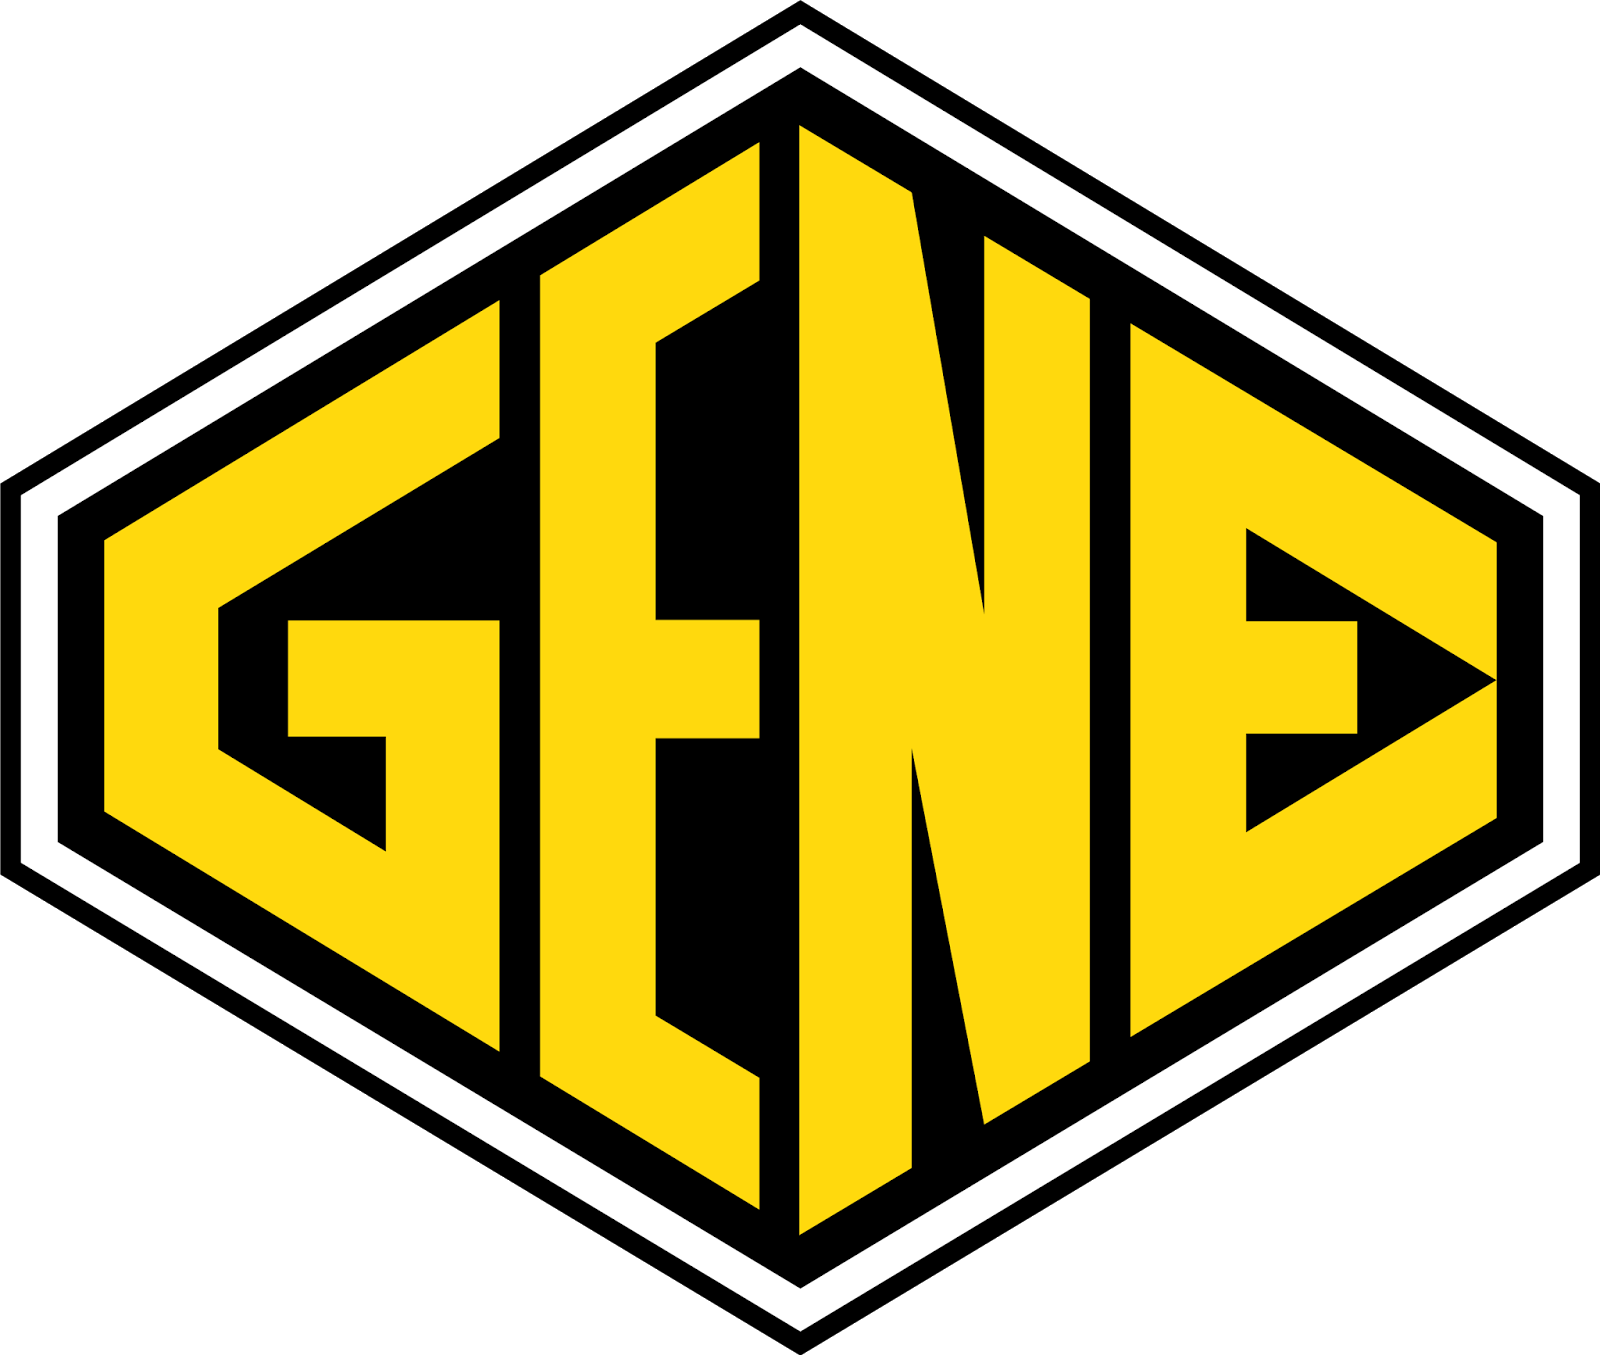 Logodol 全てが高画質 背景透過なアーティストのロゴをお届けするブログ まだプリ画像でgenerationsのロゴ探してるの Live Tour 15 Generation Ex の高画質透過ロゴ